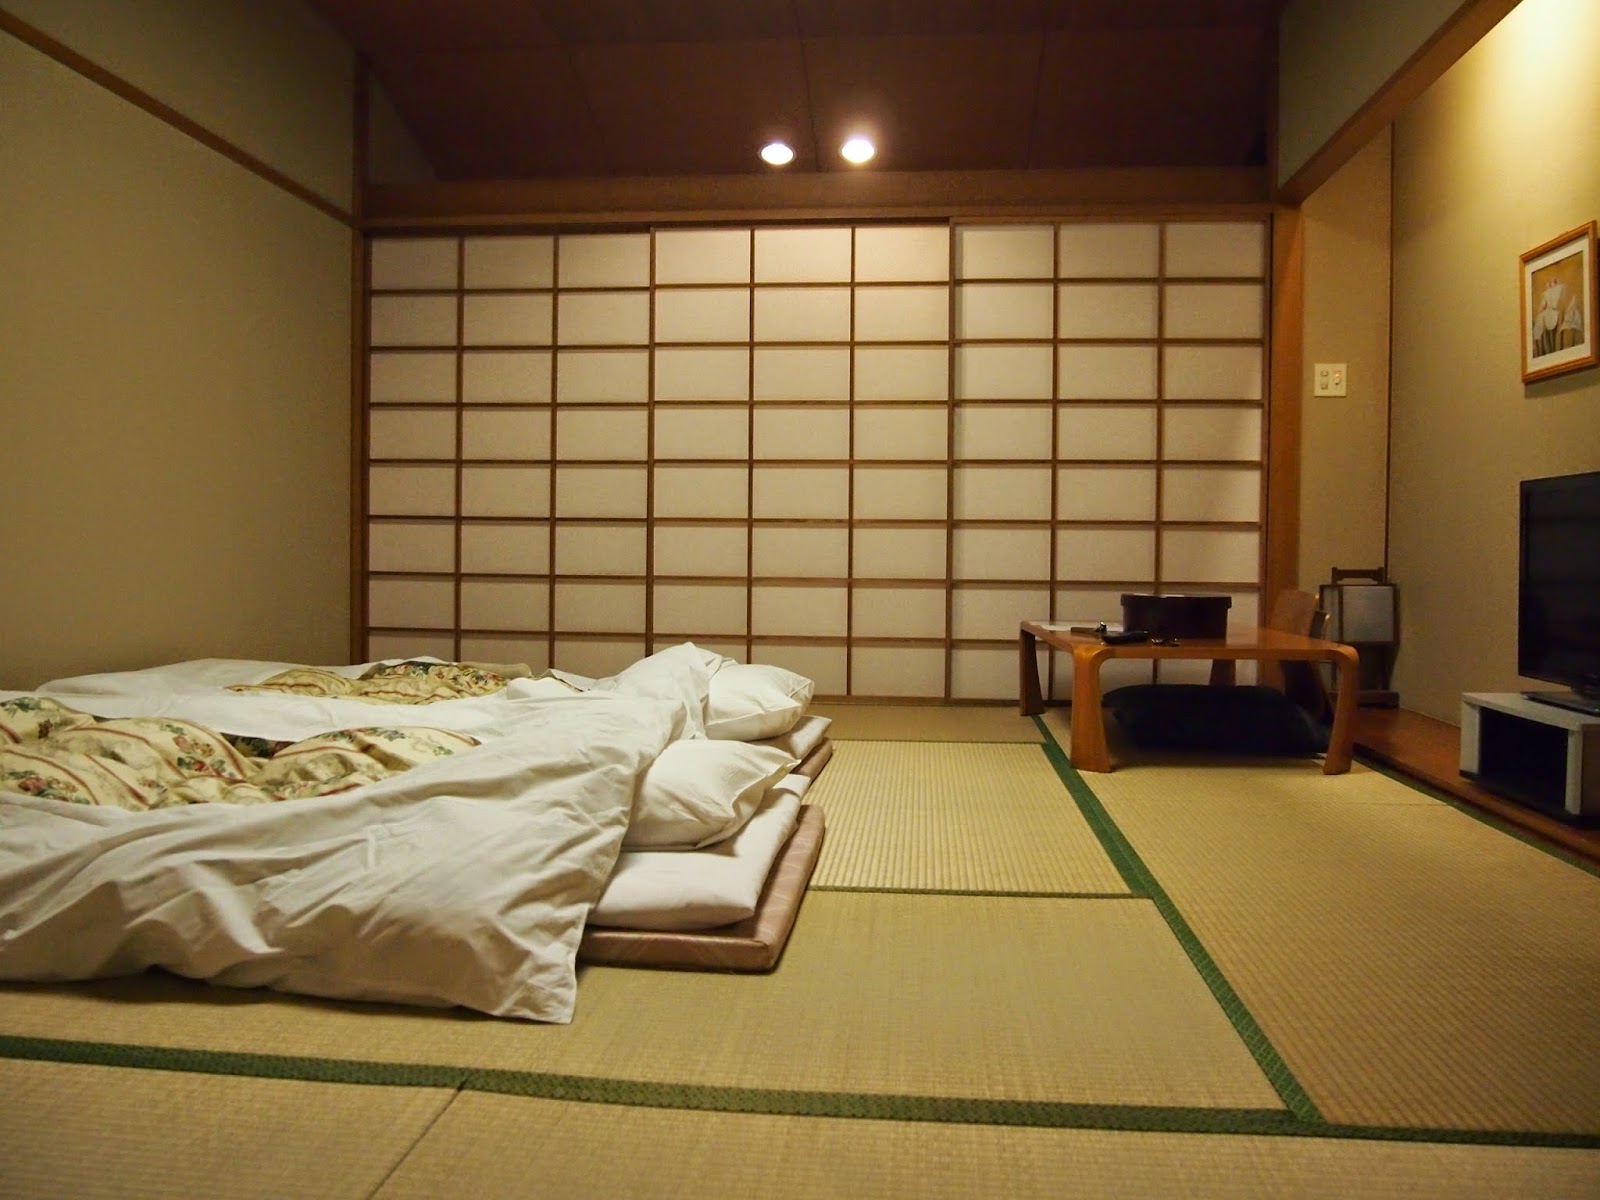 Υπνοδωμάτιο εσωτερικού χώρου σε ιαπωνικό στιλ